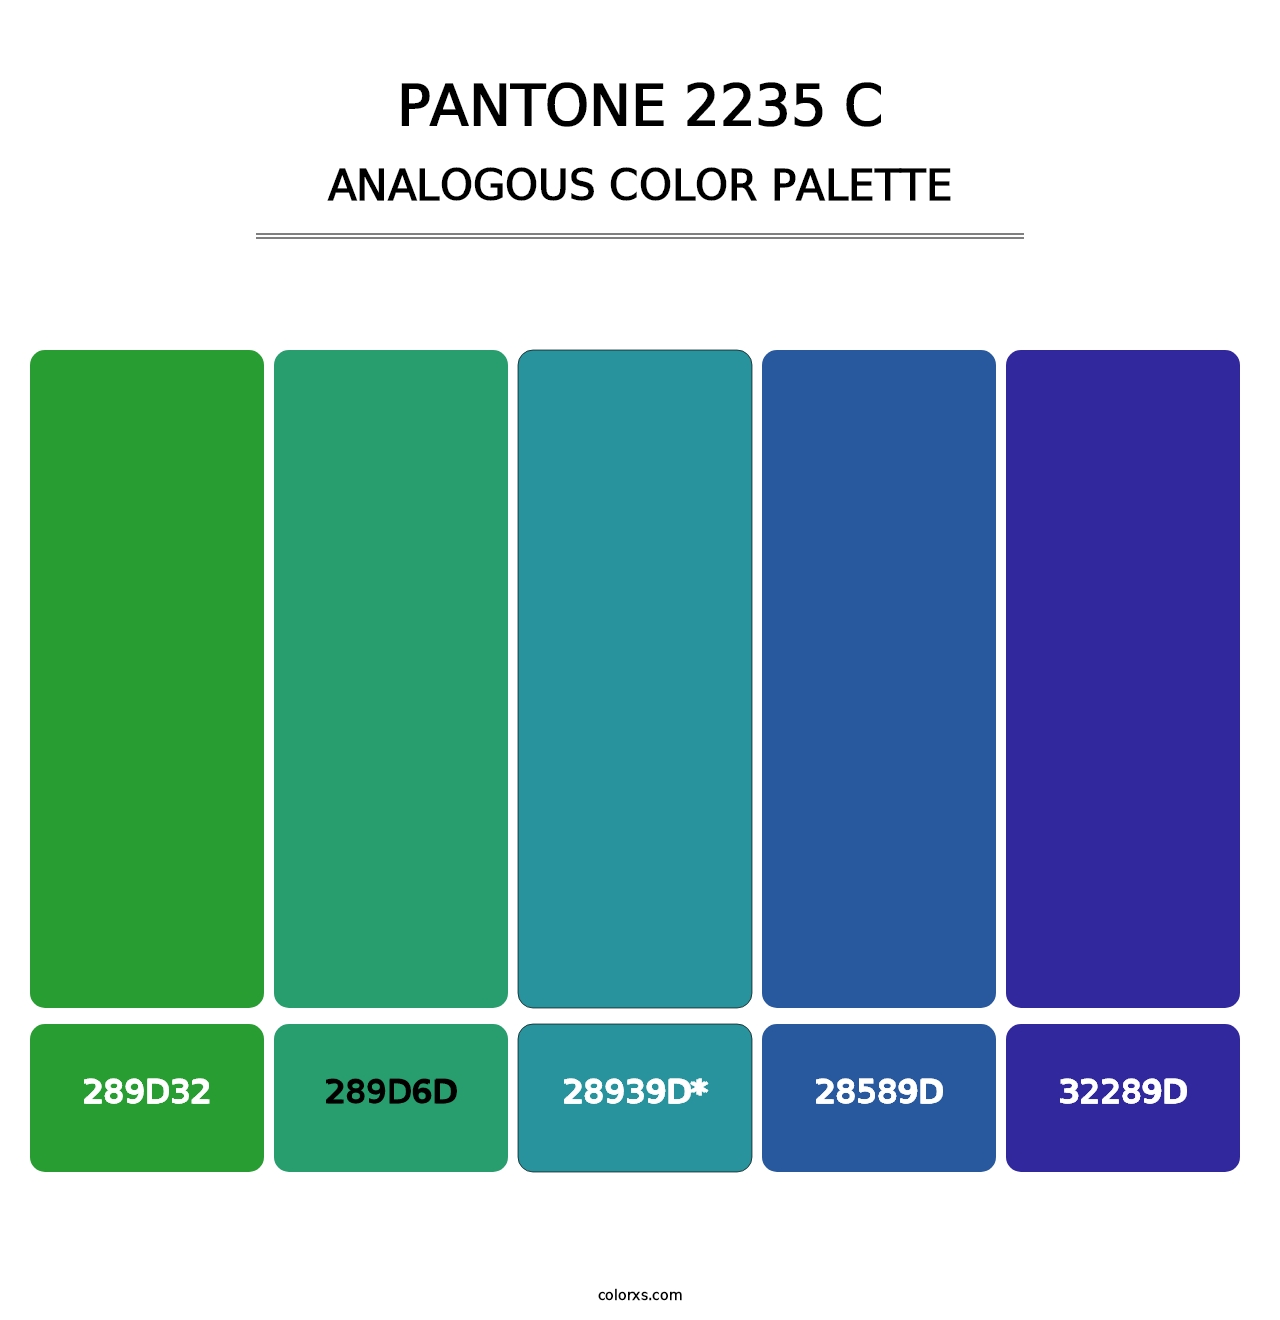 PANTONE 2235 C - Analogous Color Palette